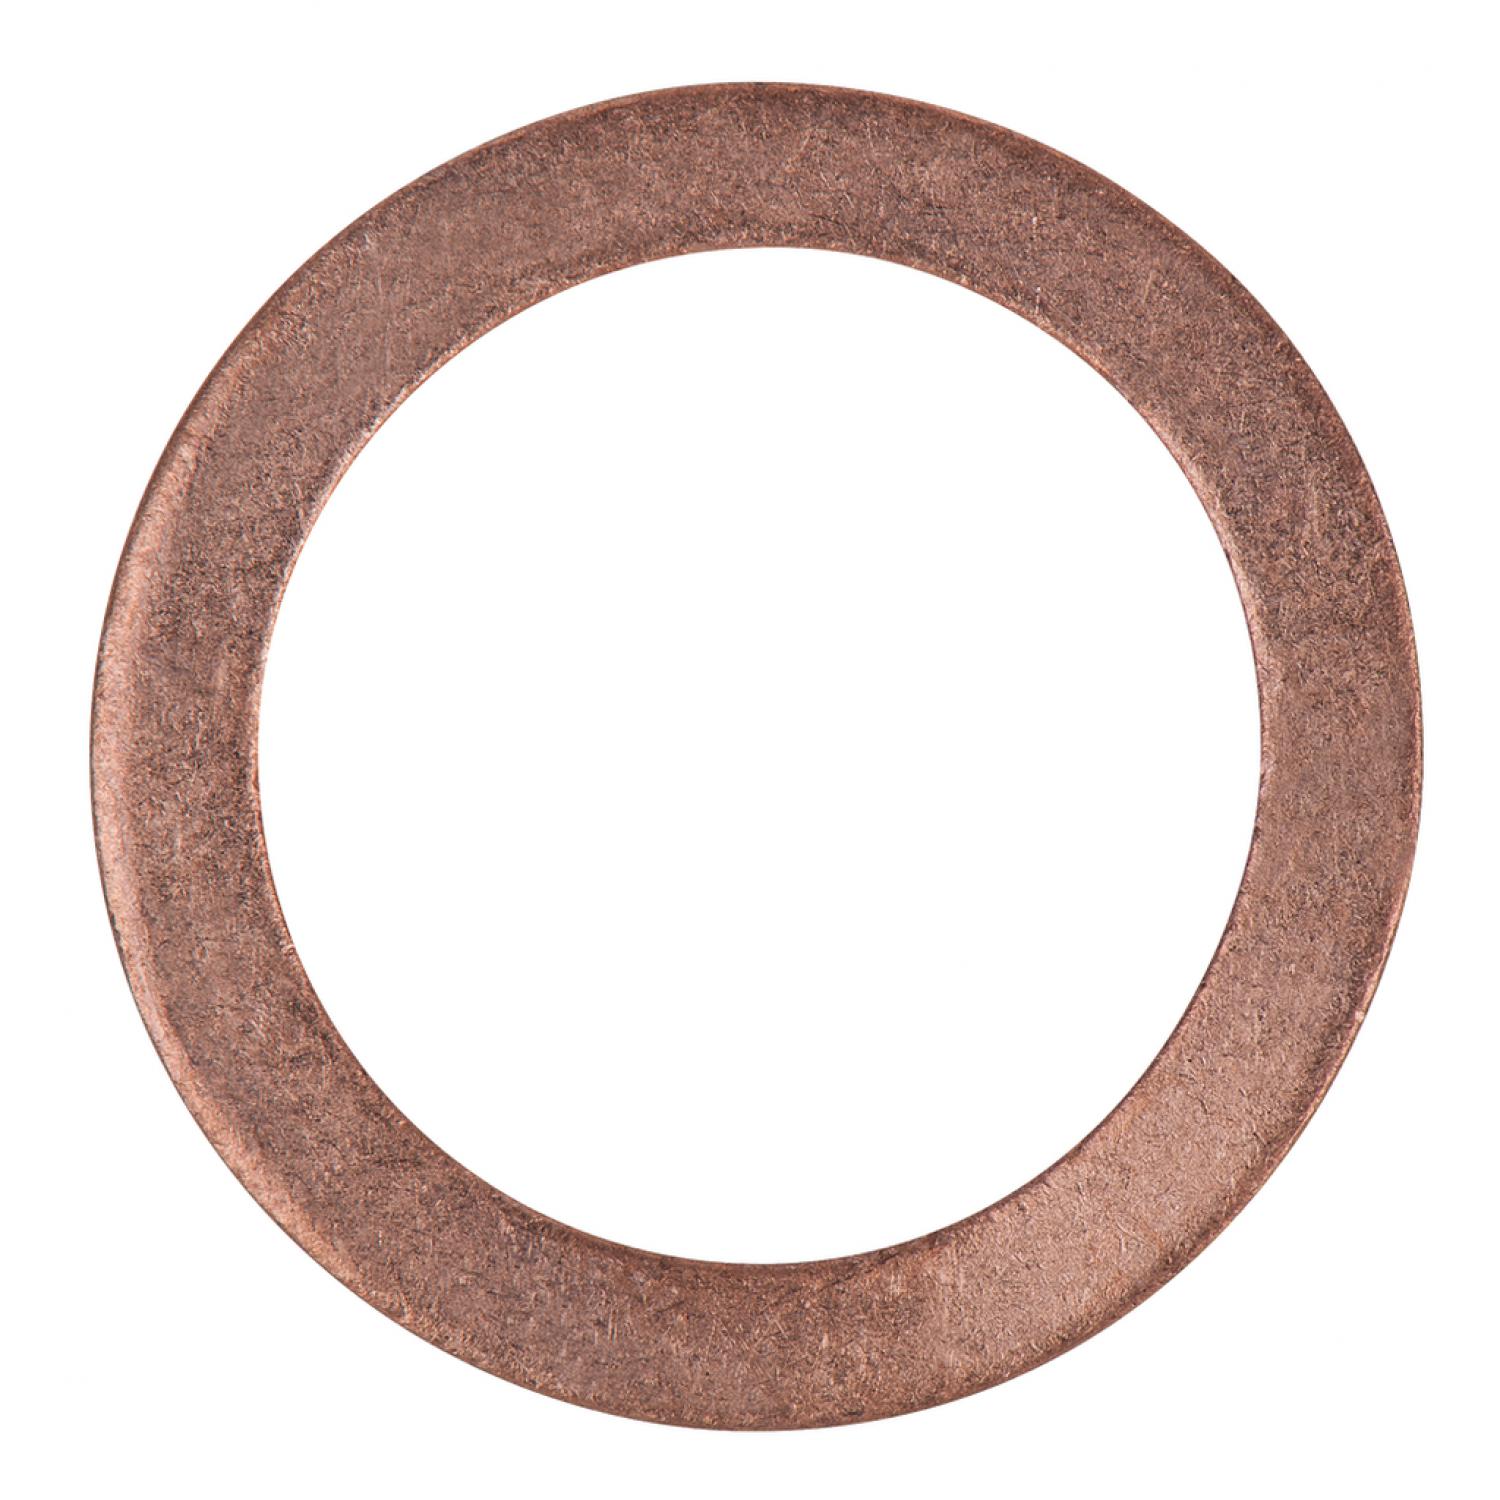 Уплотнительное кольцо, медное, внешний Ø 26 мм, внутренний Ø 19 мм, 10 шт в упаковке